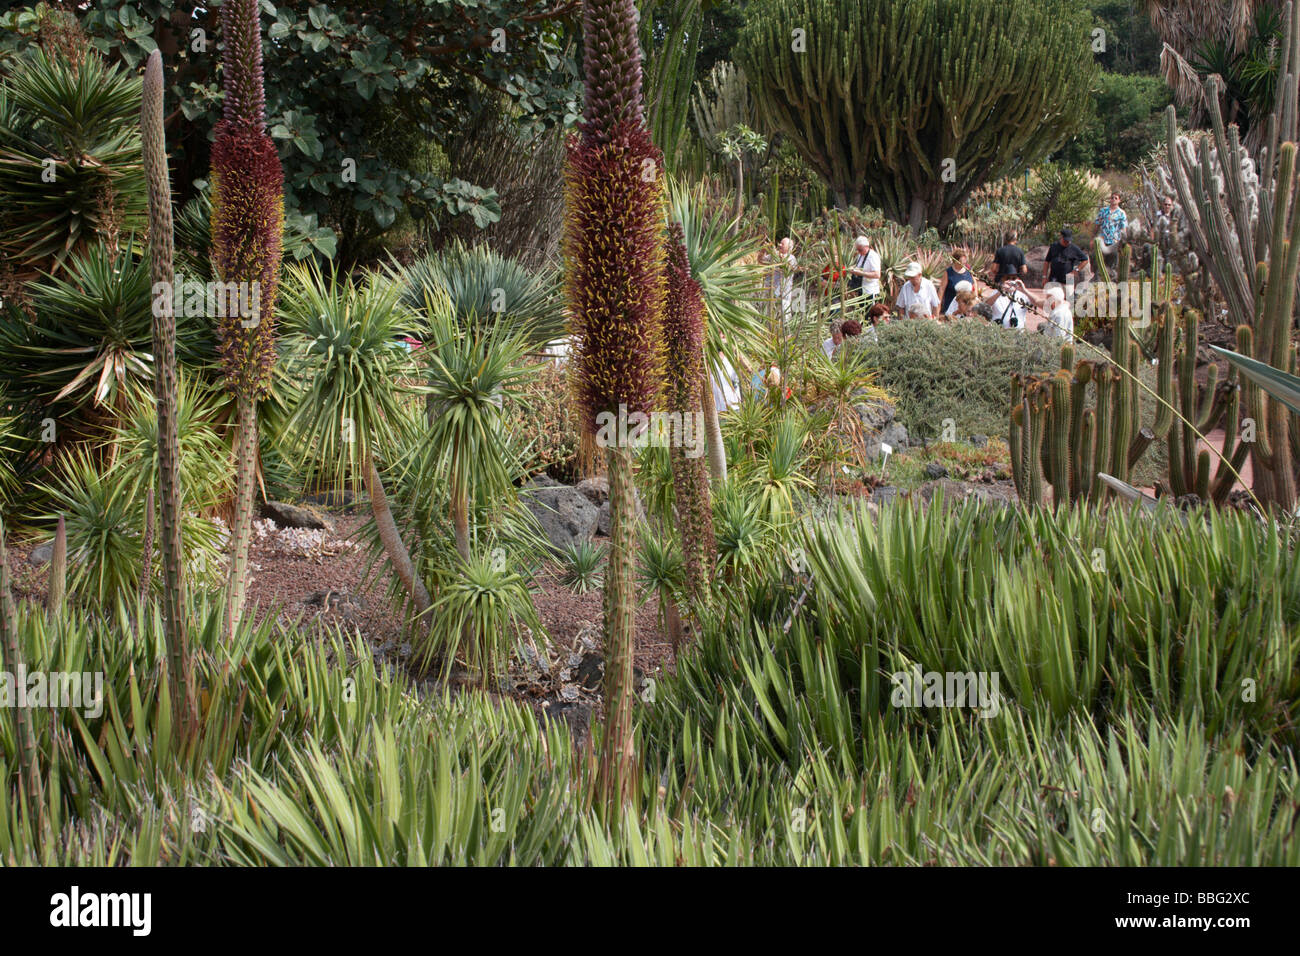 Touristen in El Jardin Botanico Viera Y Clavijo in der Nähe von Las Palmas. Stockfoto